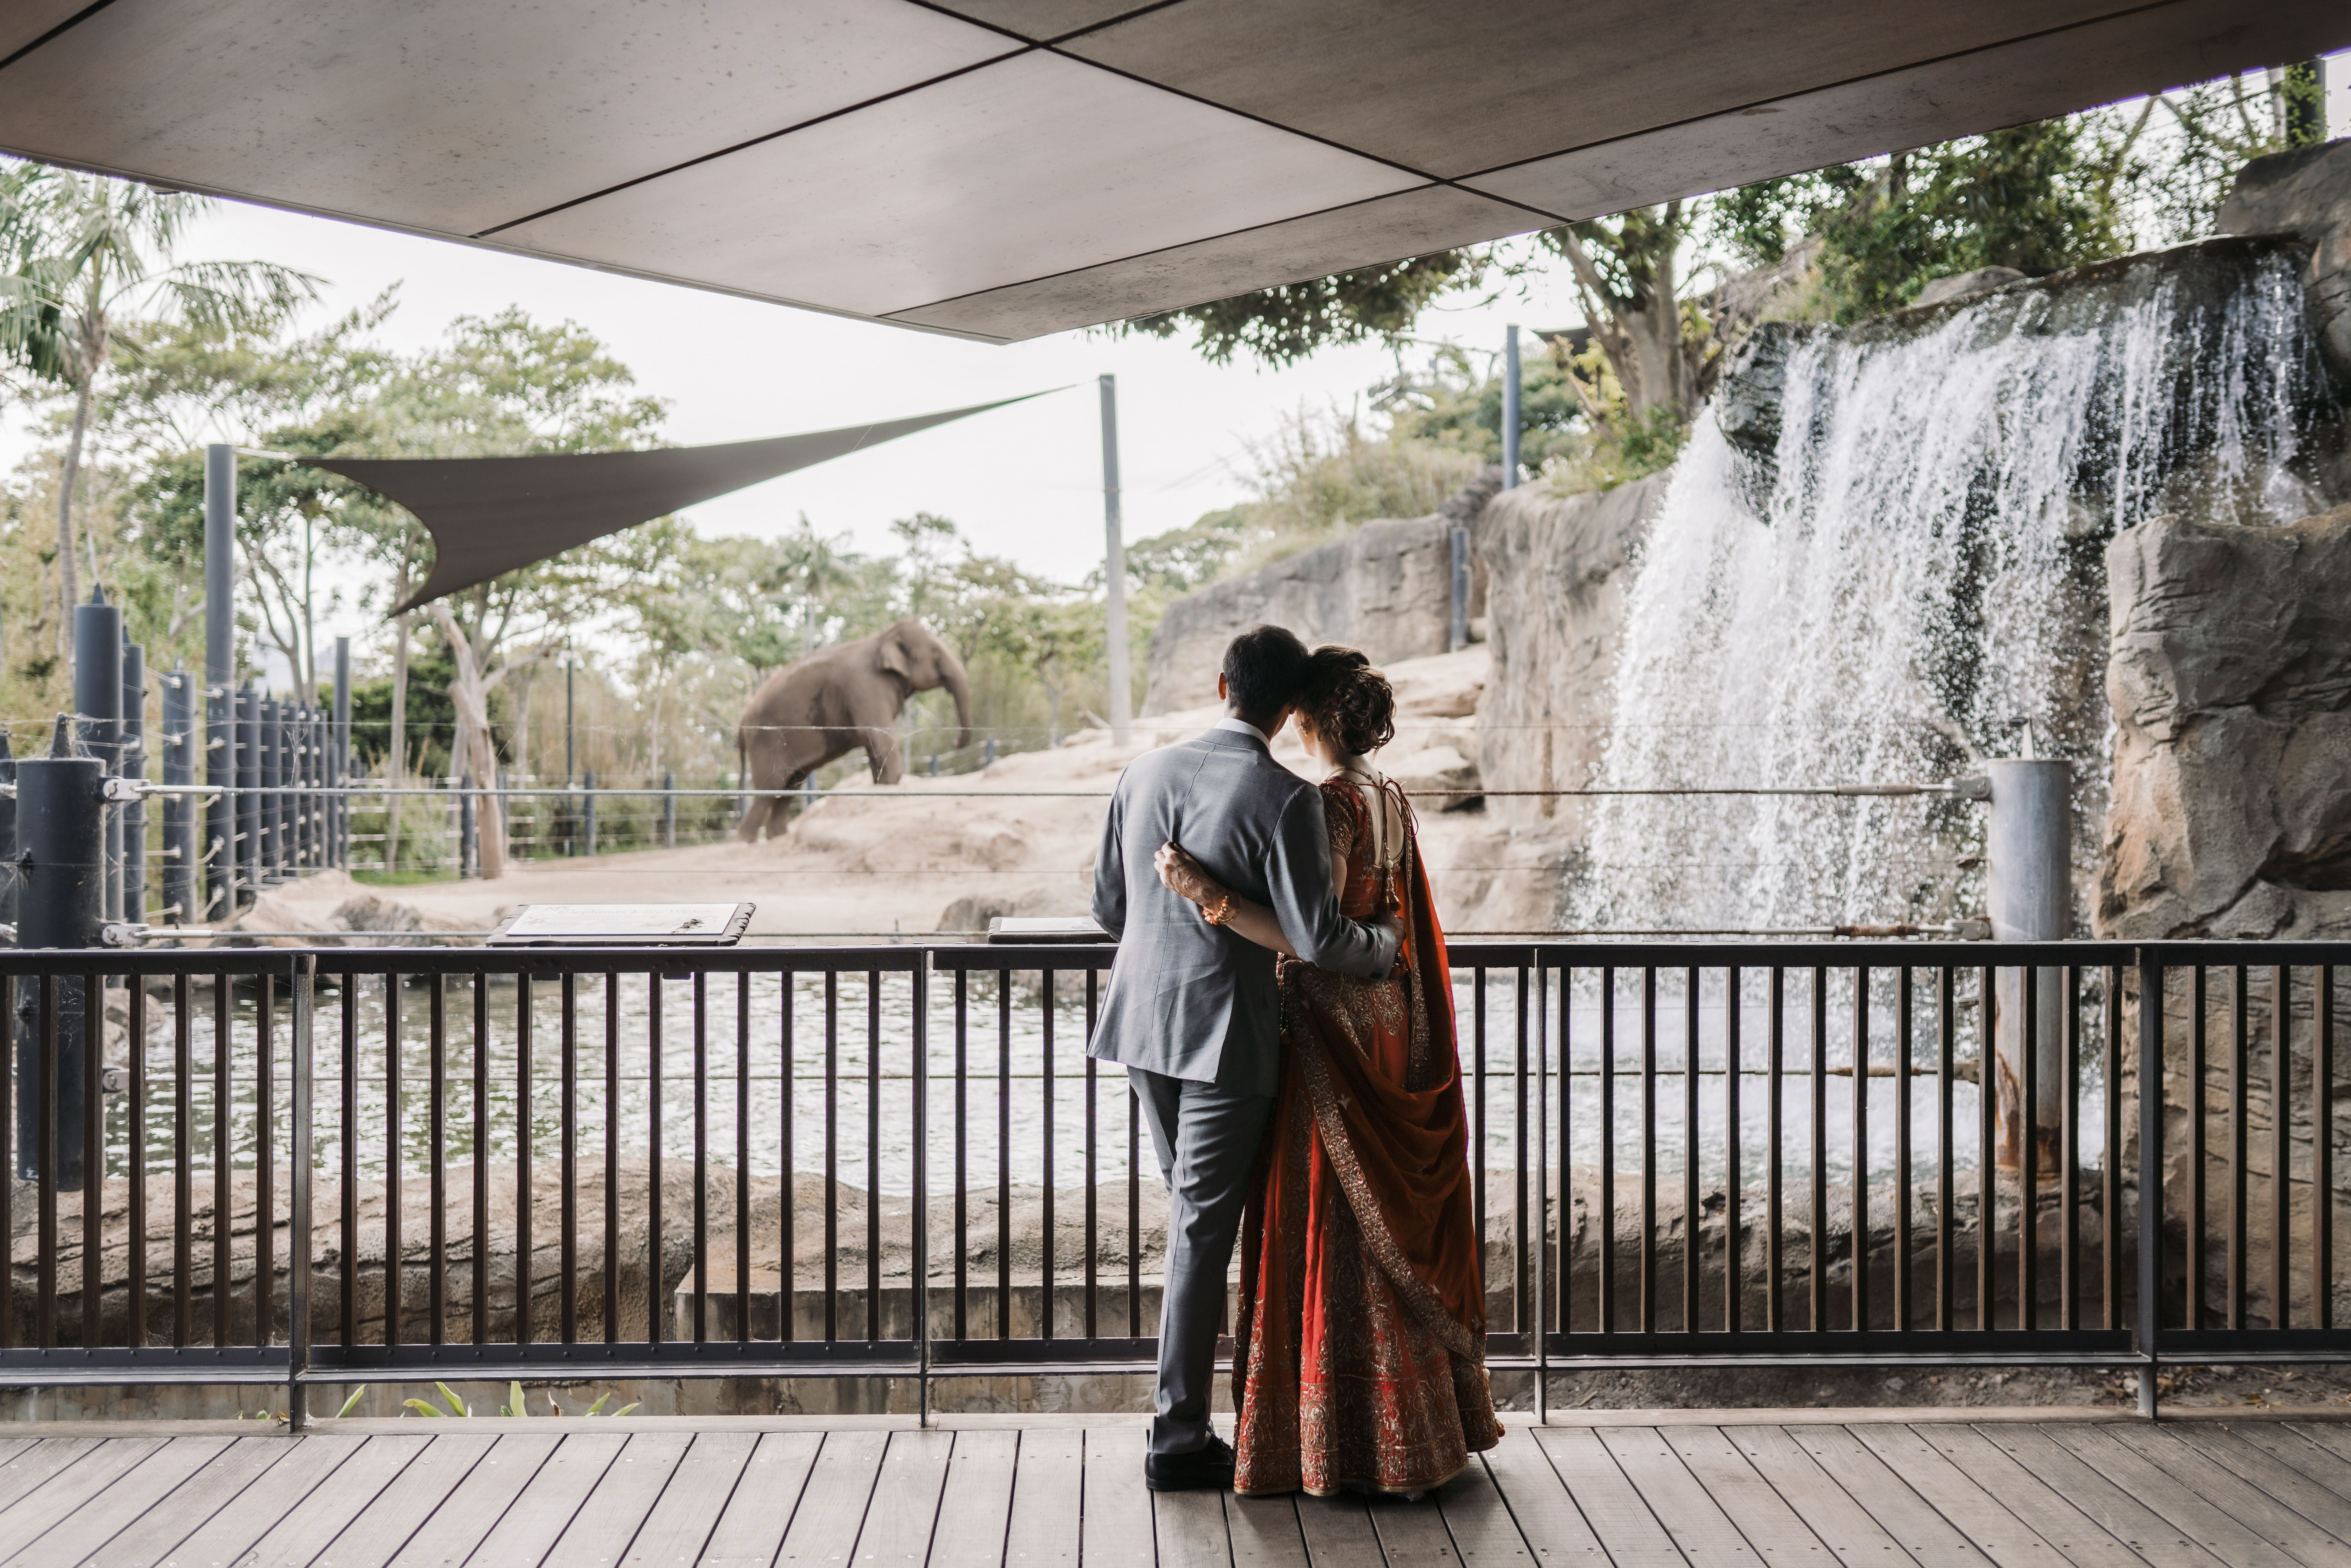 Taronga Zoo: Sydney Weddings with a Wild Twist